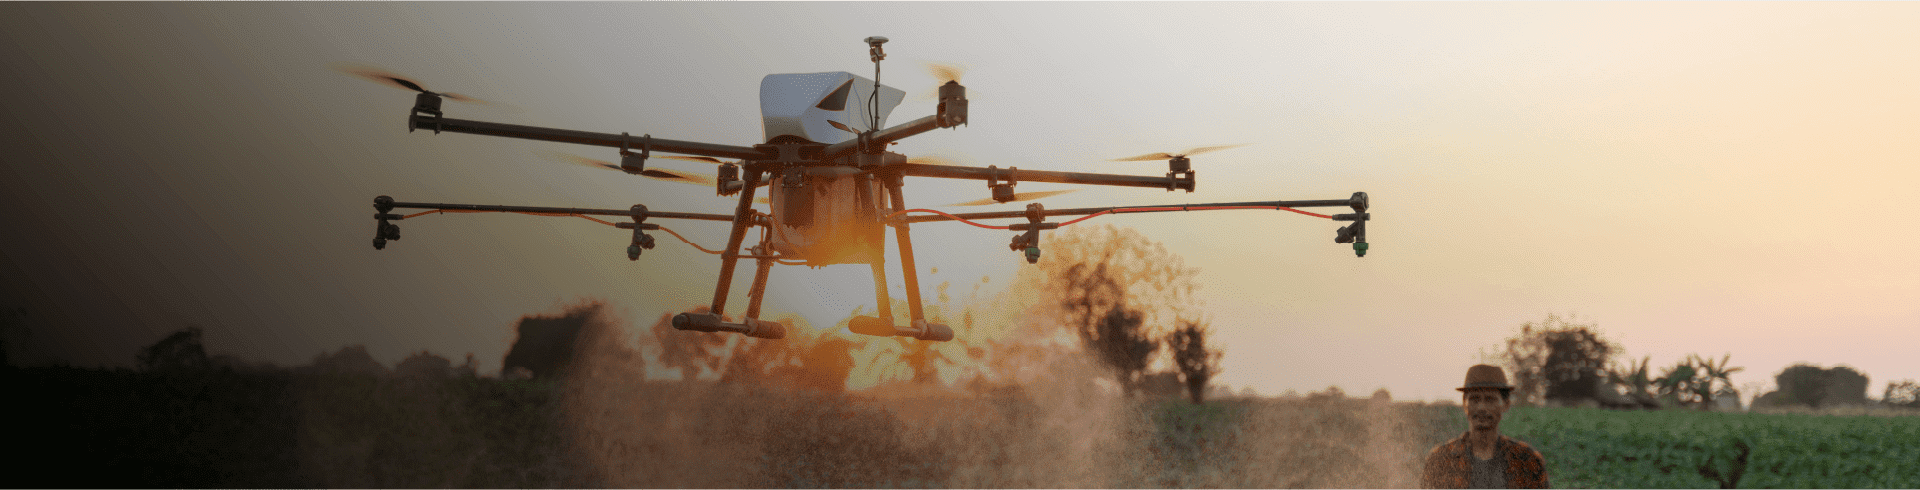 Aplicaciones de los drones en agronegocios